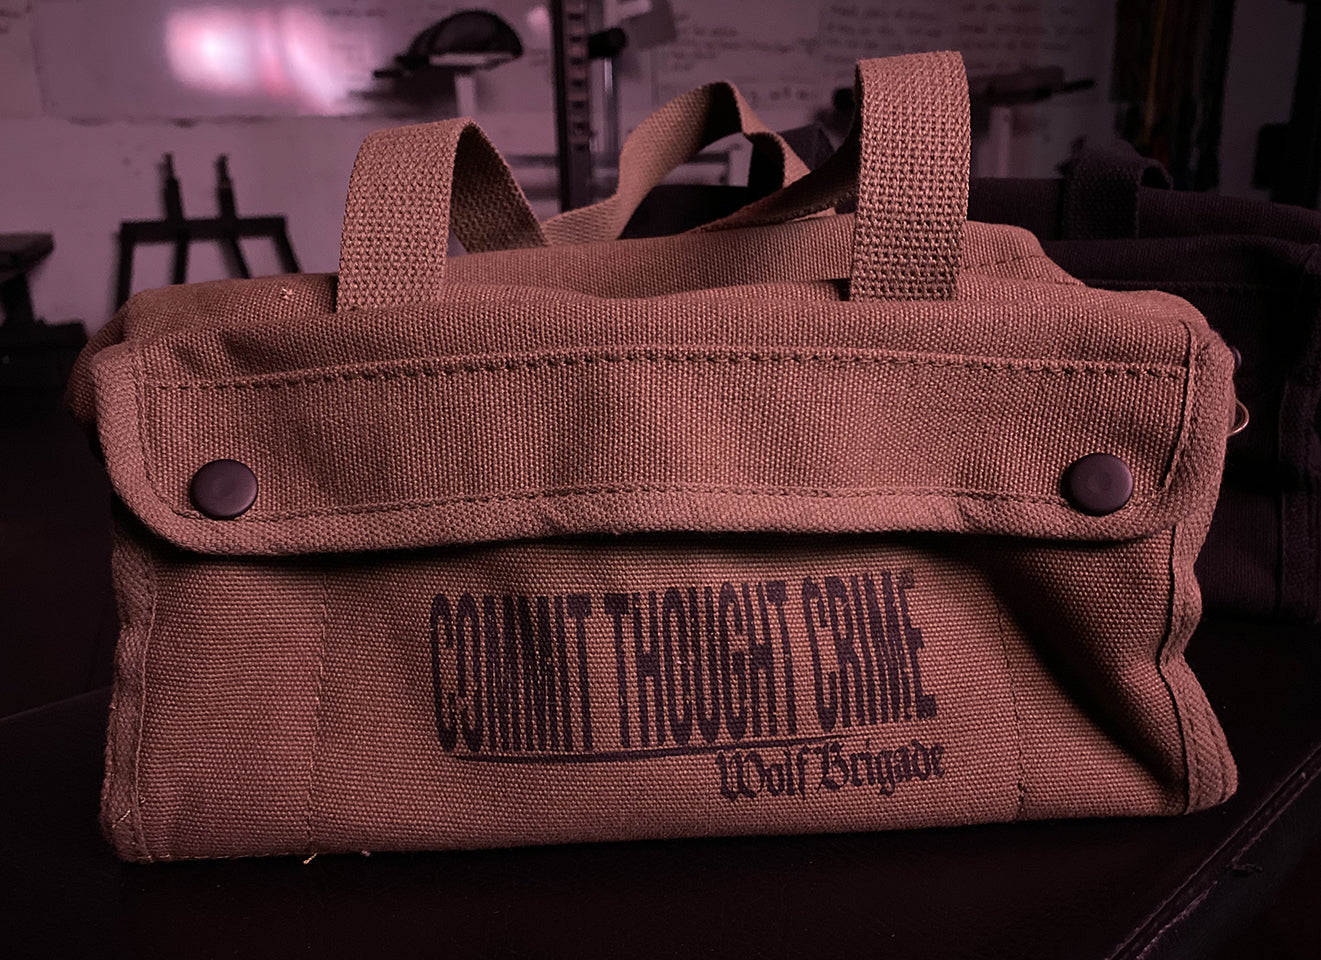 'Thought Crime' Tool Bag